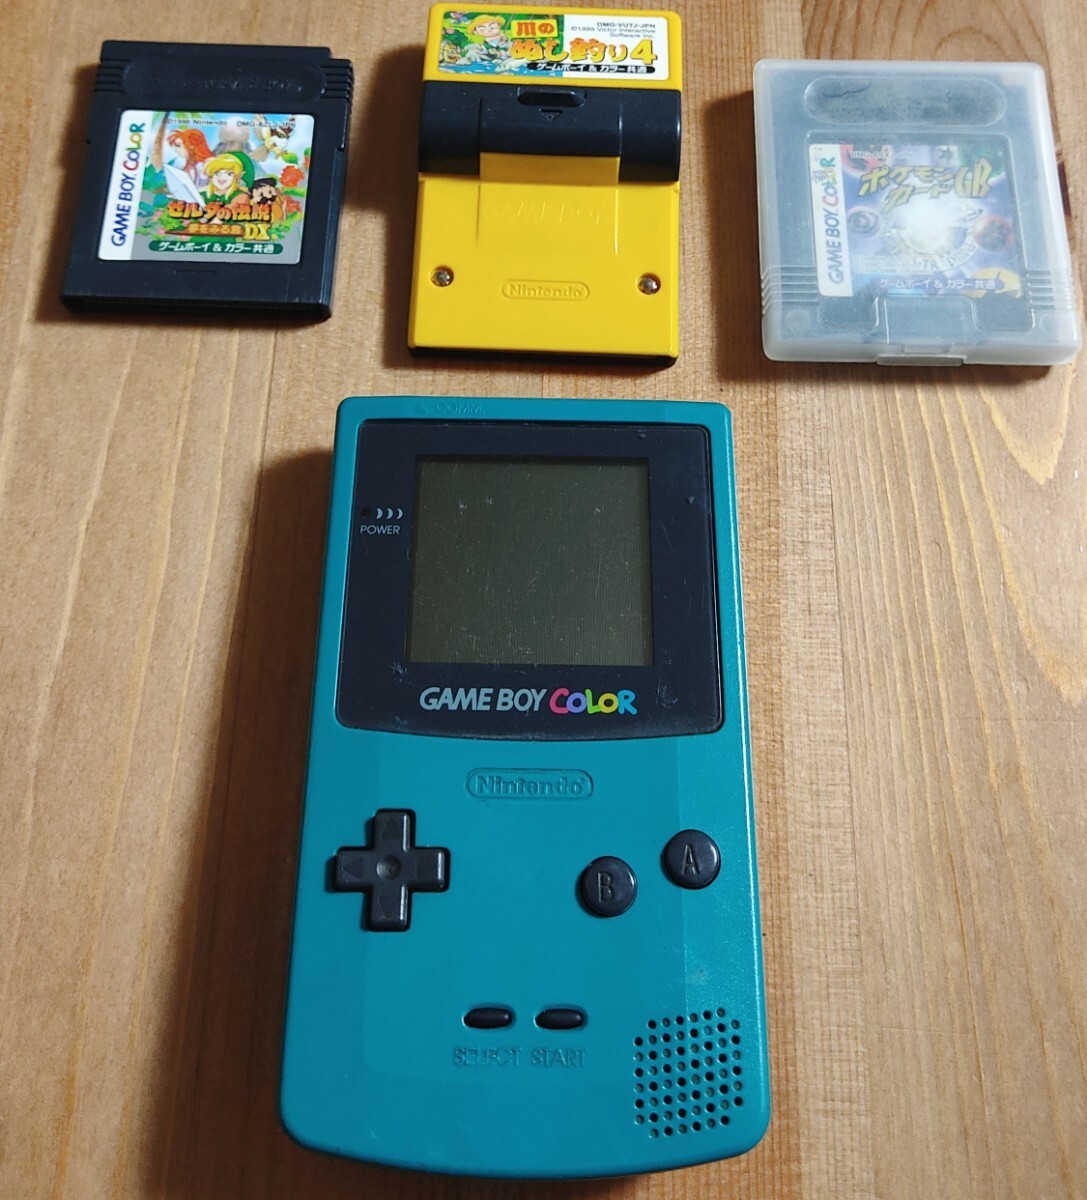 [ Game Boy цвет ]CGB-001 голубой игра машина корпус утиль nintendo Nintendo Nintendo soft 3 штук 